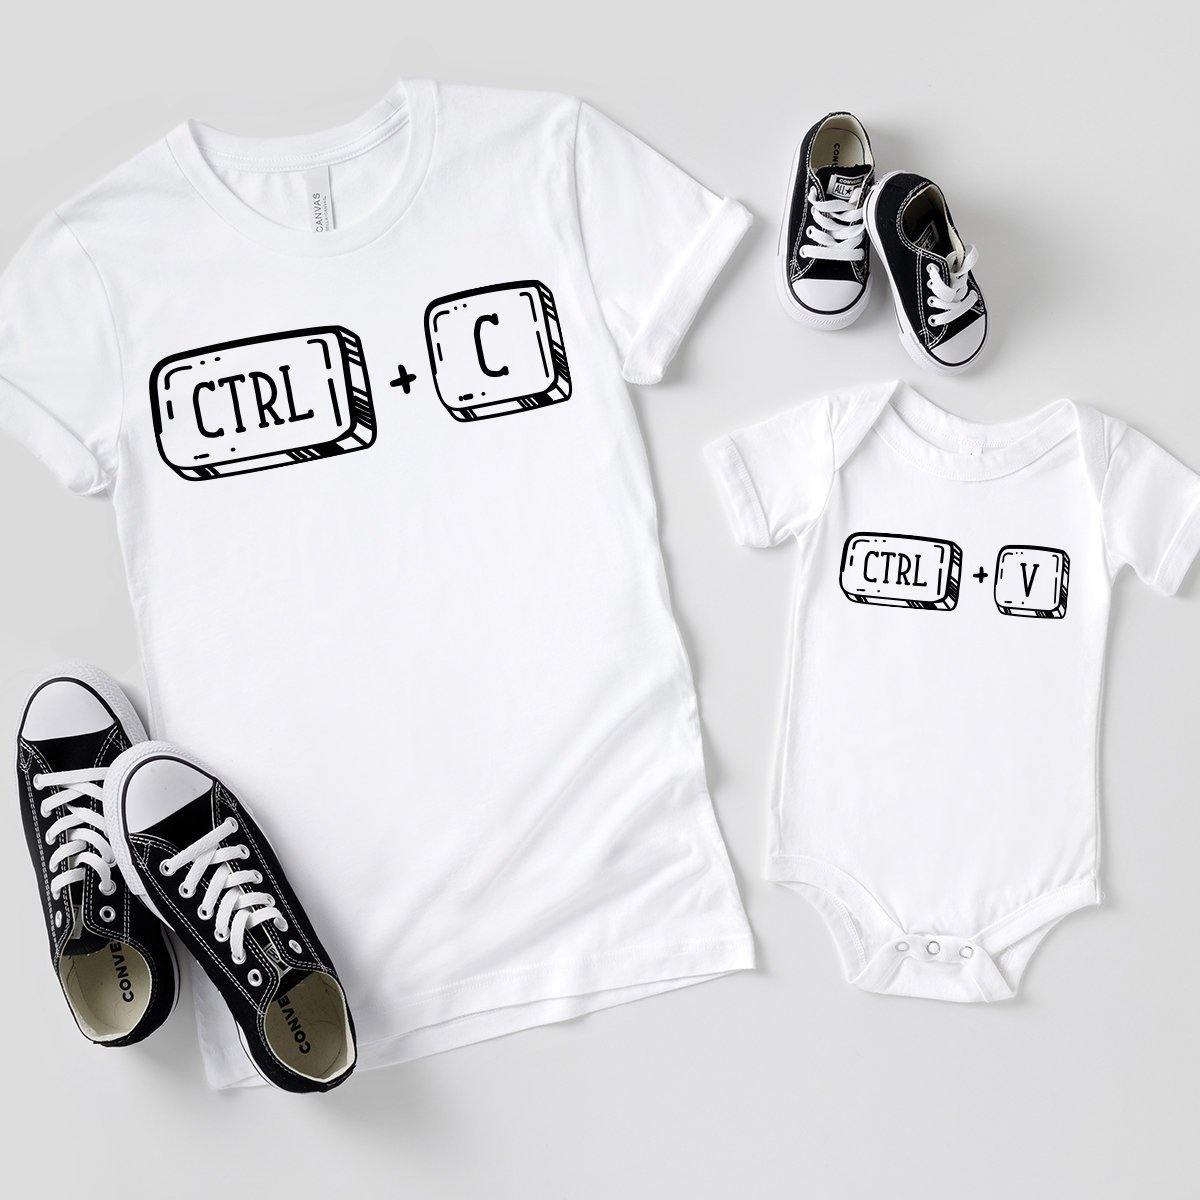 Copy Paste T-Shirt, Ctrl C Ctrl V Shirt, Matching Family Shirt